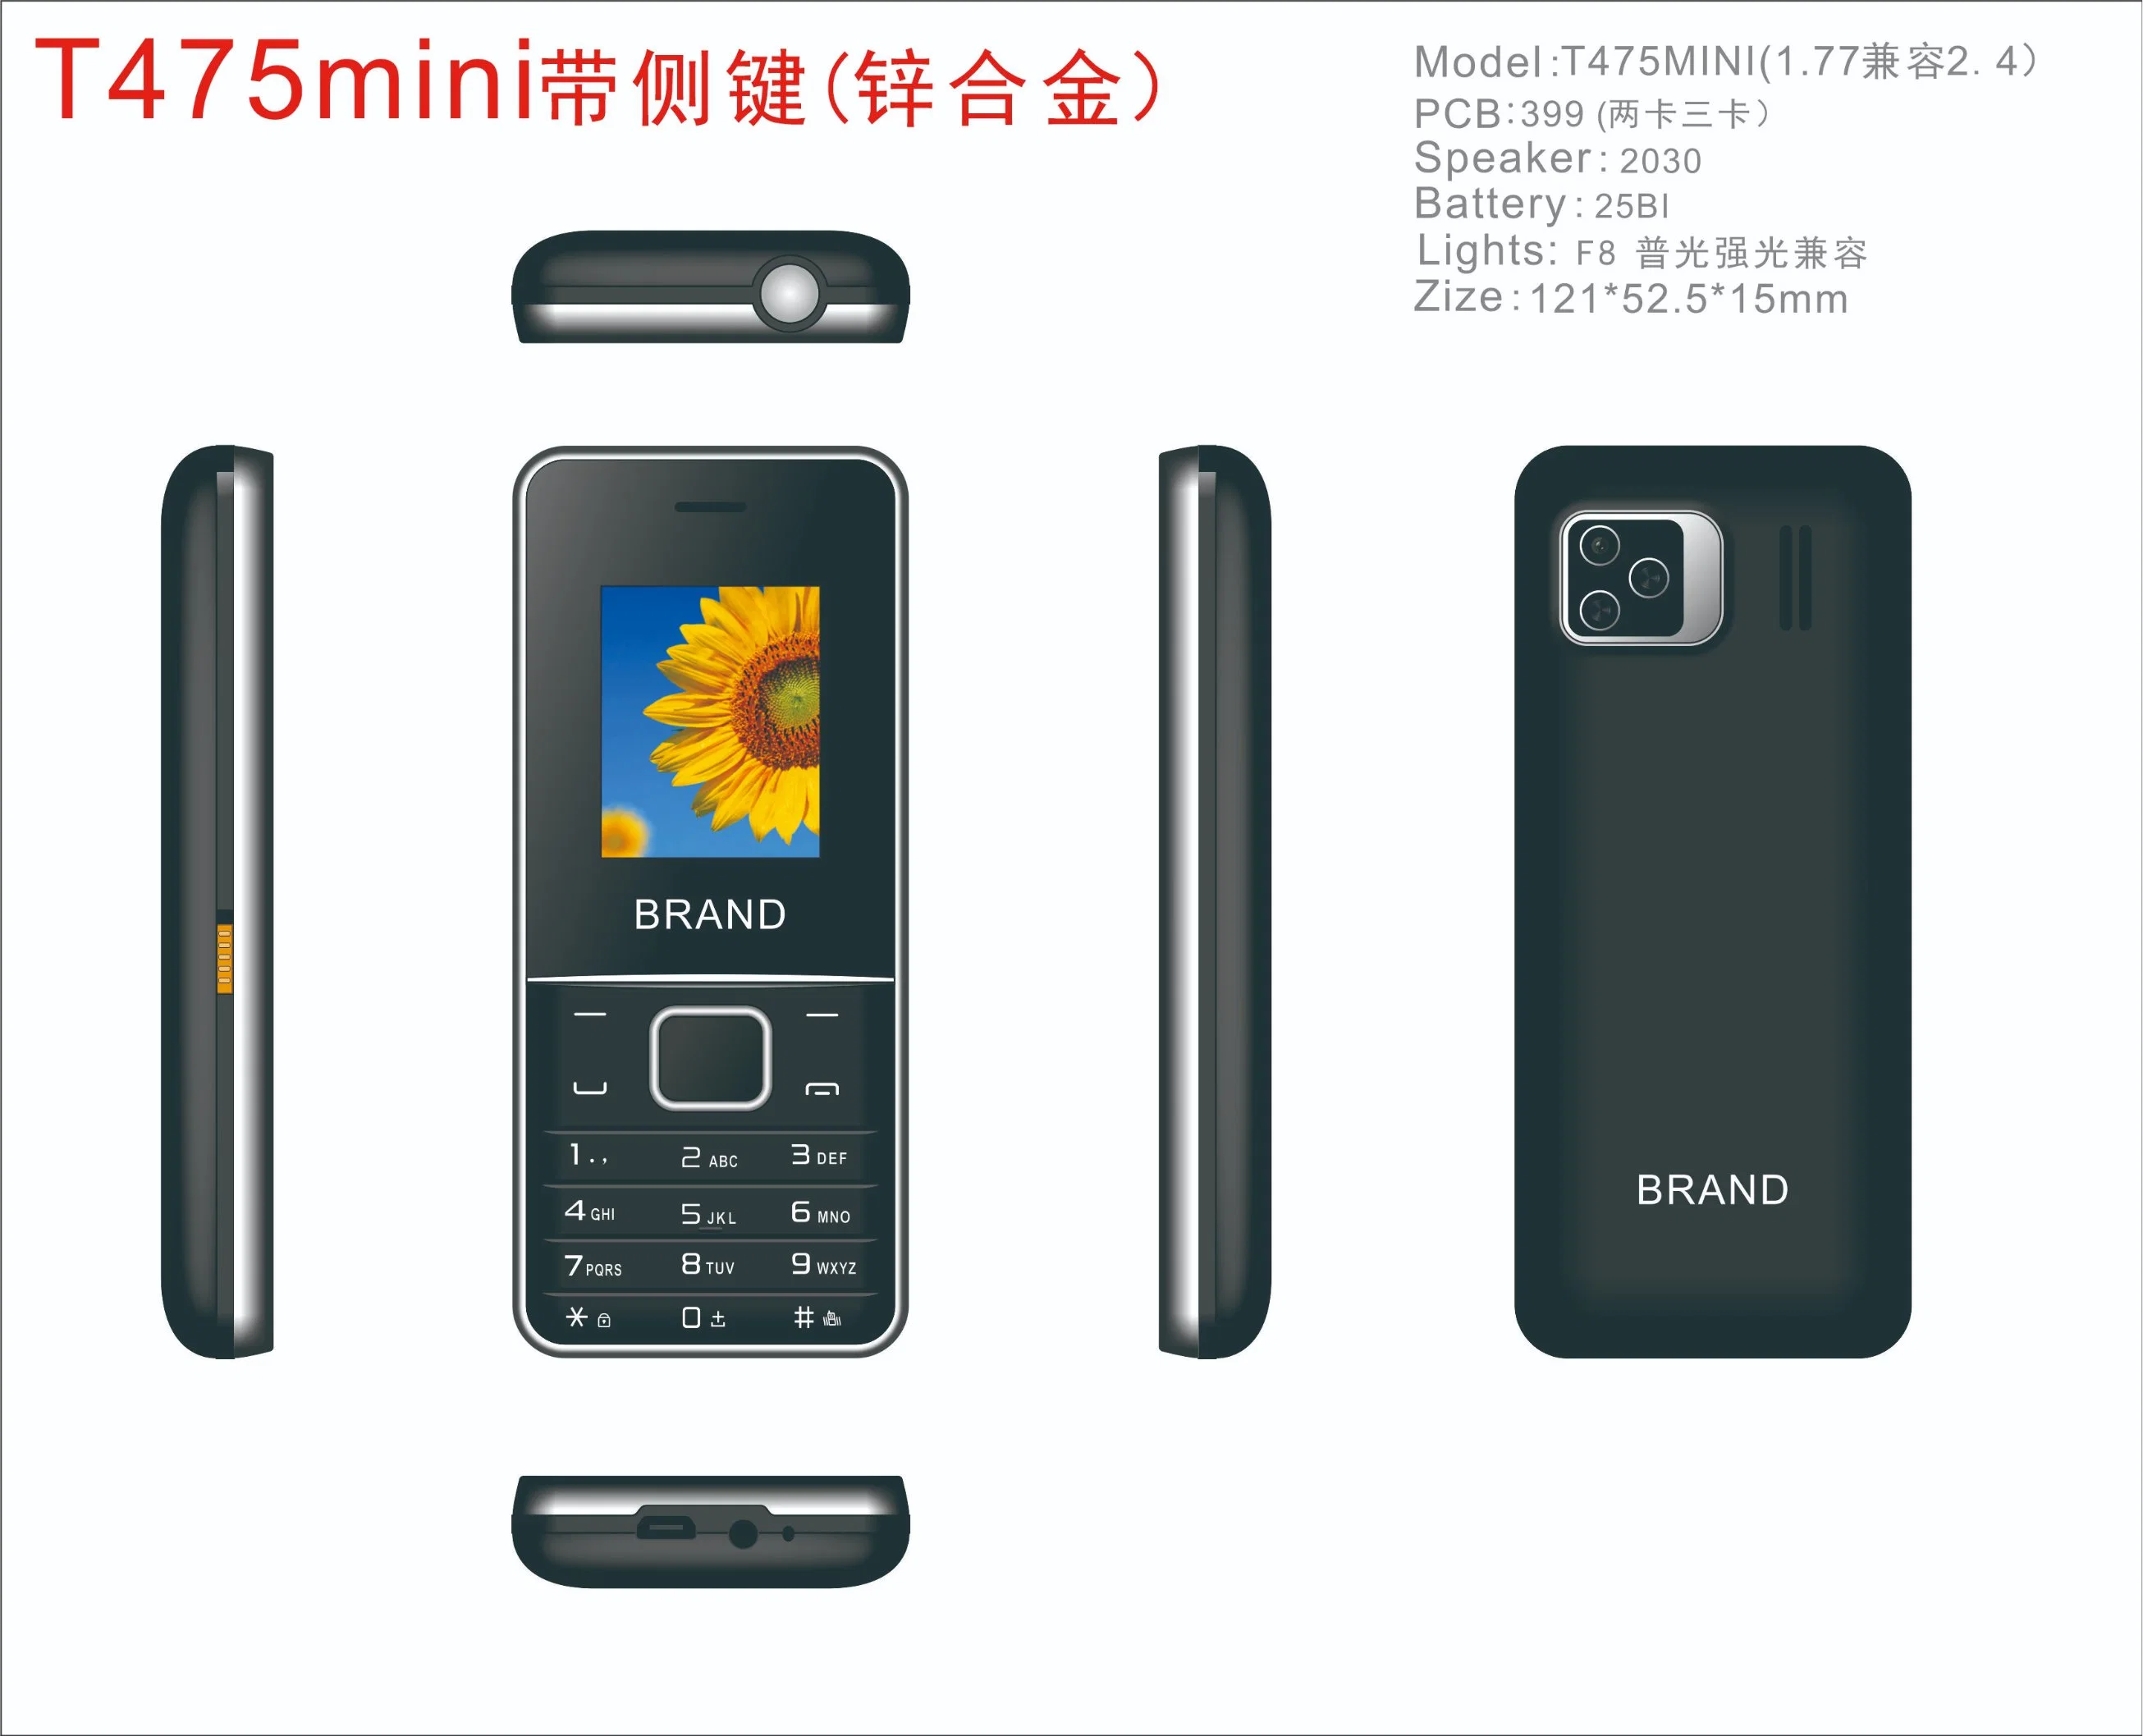 عالية الجودة OEM ODM 1.77 بوصة بار الهواتف الشركة المصنعة الأصلي بطارية كبيرة ، زر كبير ، شاشة كبيرة الحجم ميزة الهاتف